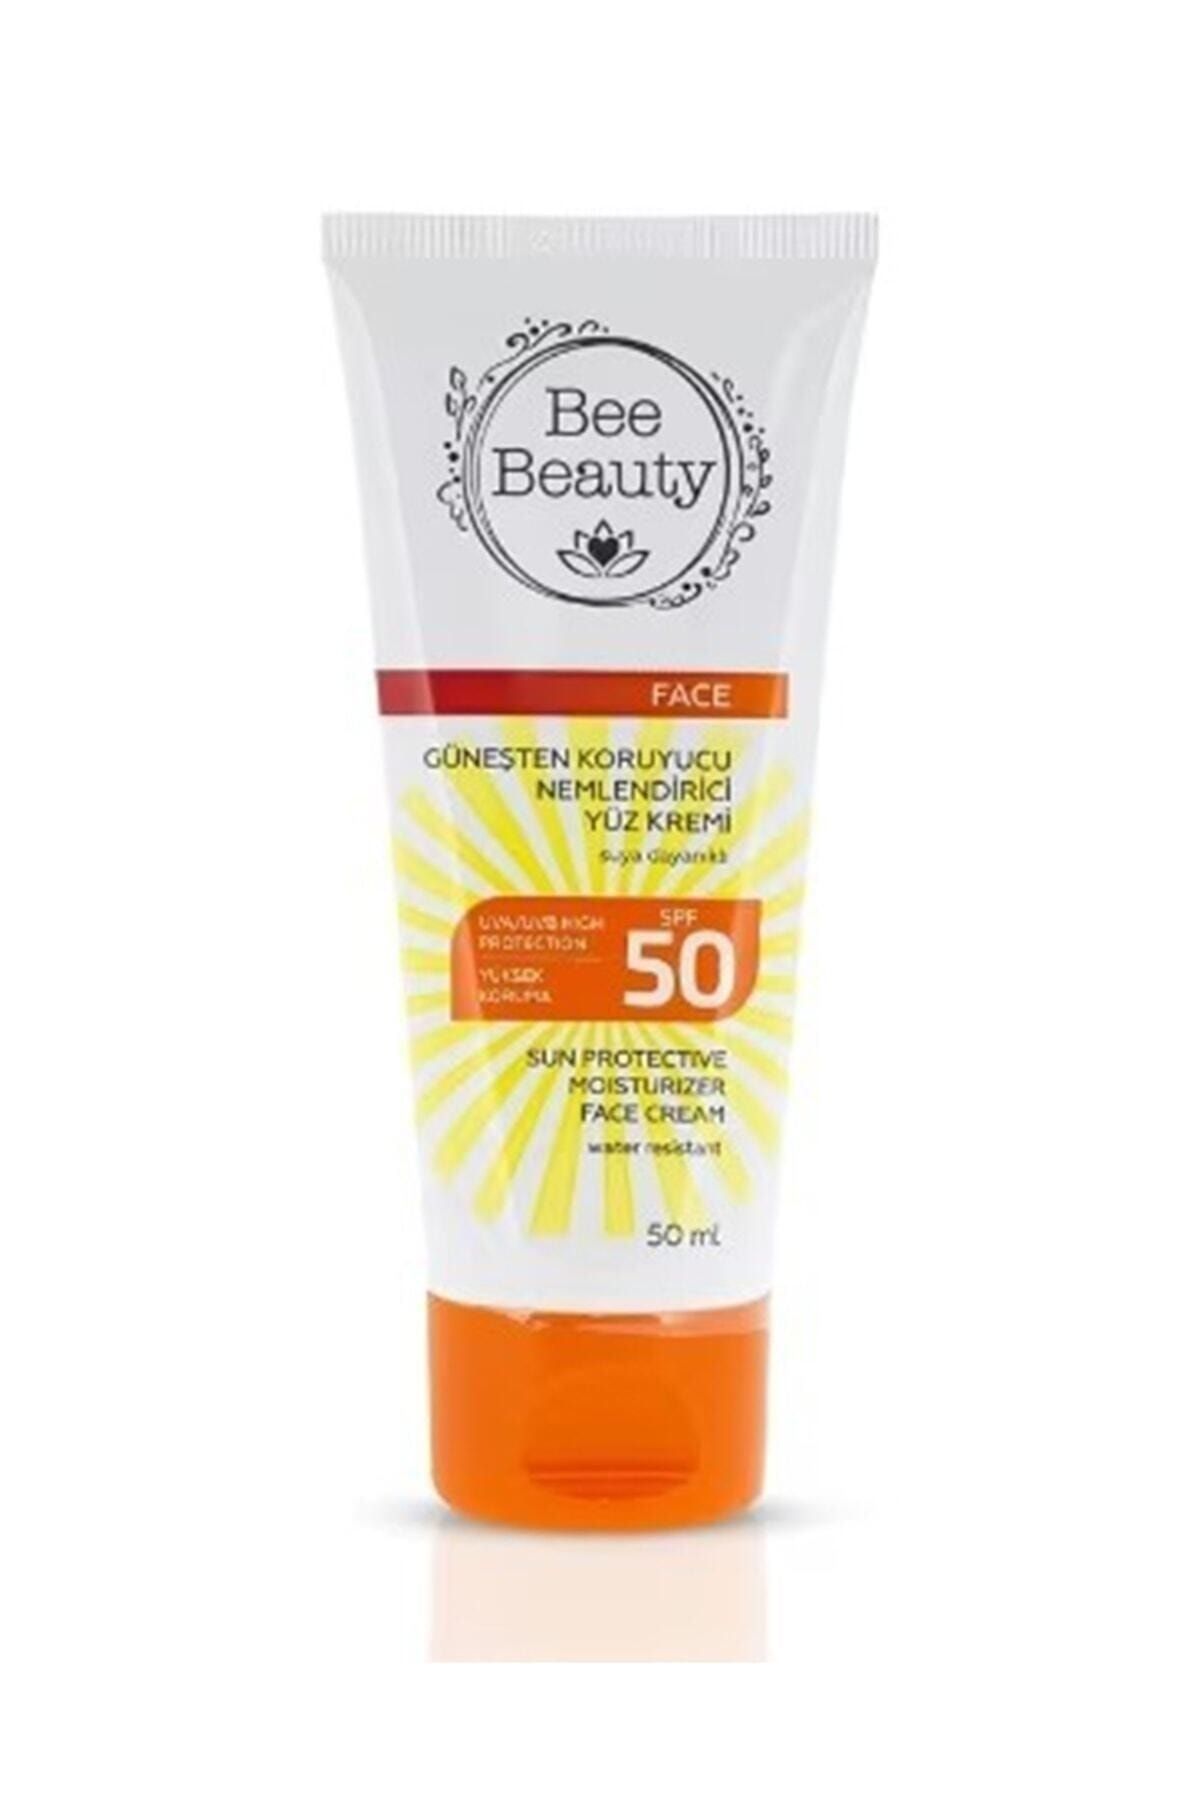 Bee Beauty Güneşten Koruyucu Nemlendirici Yüz Kremi 50 ml